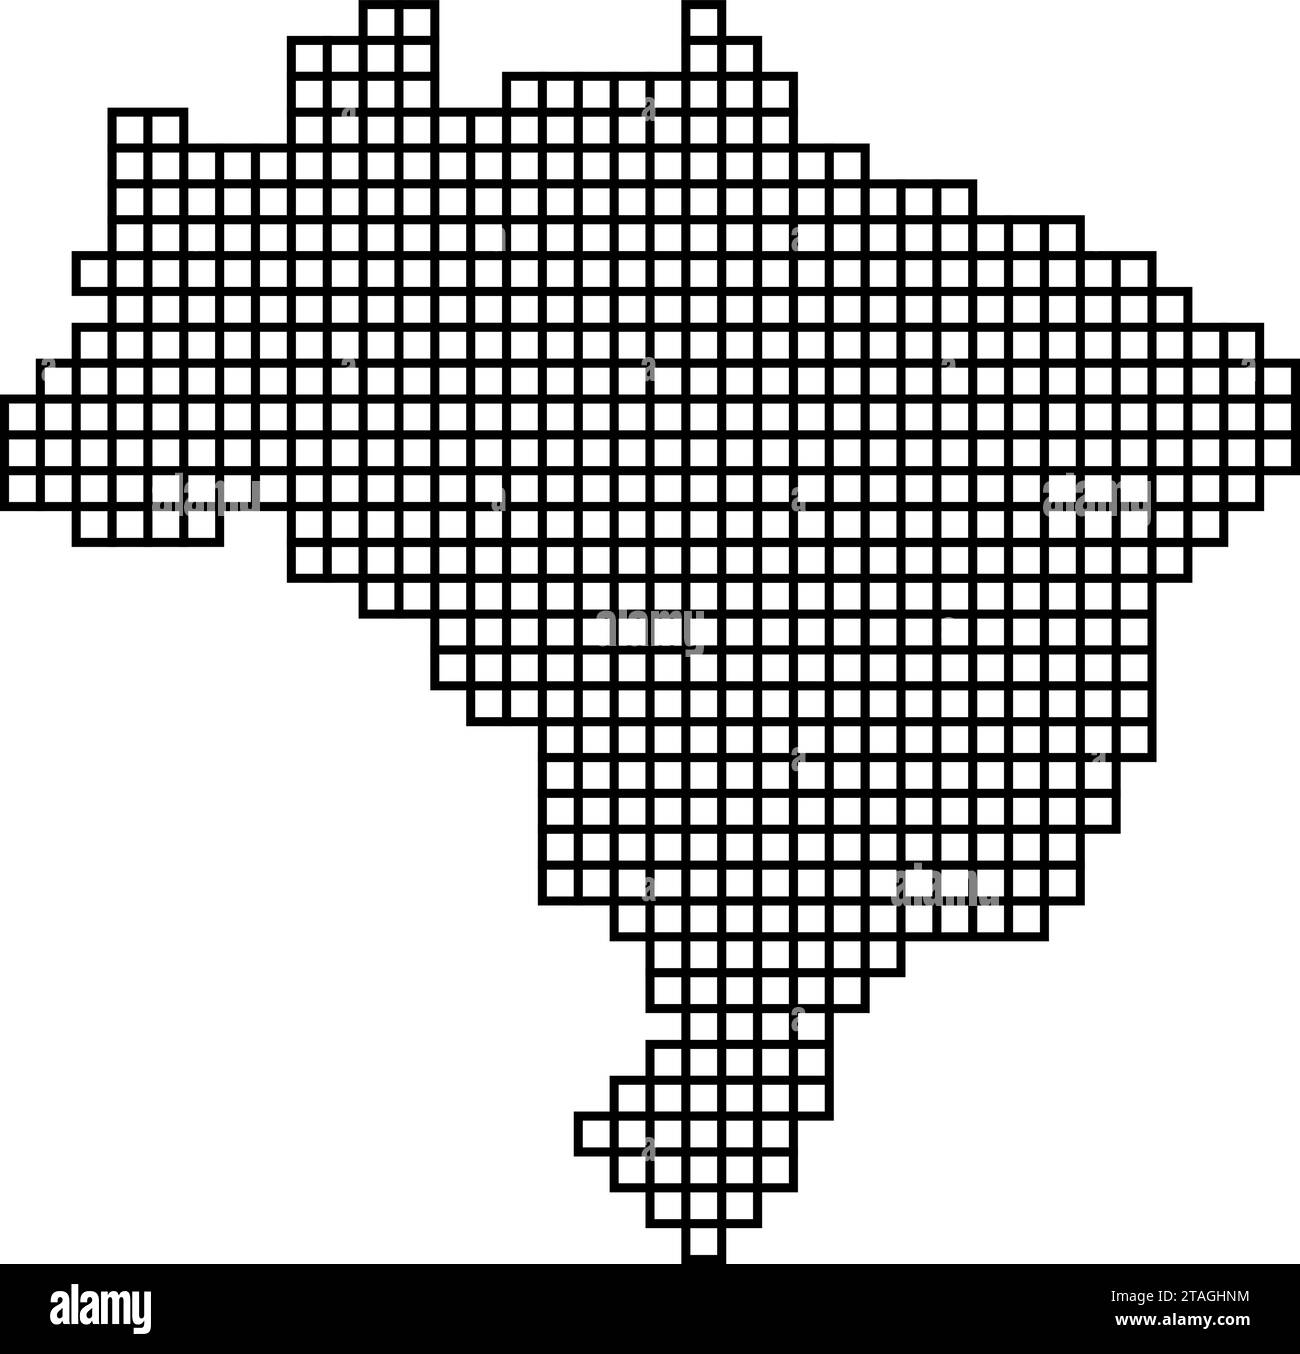 Brasilien Karte Silhouette von schwarzen Mosaikstruktur von Quadraten. Vektorabbildung. Stock Vektor